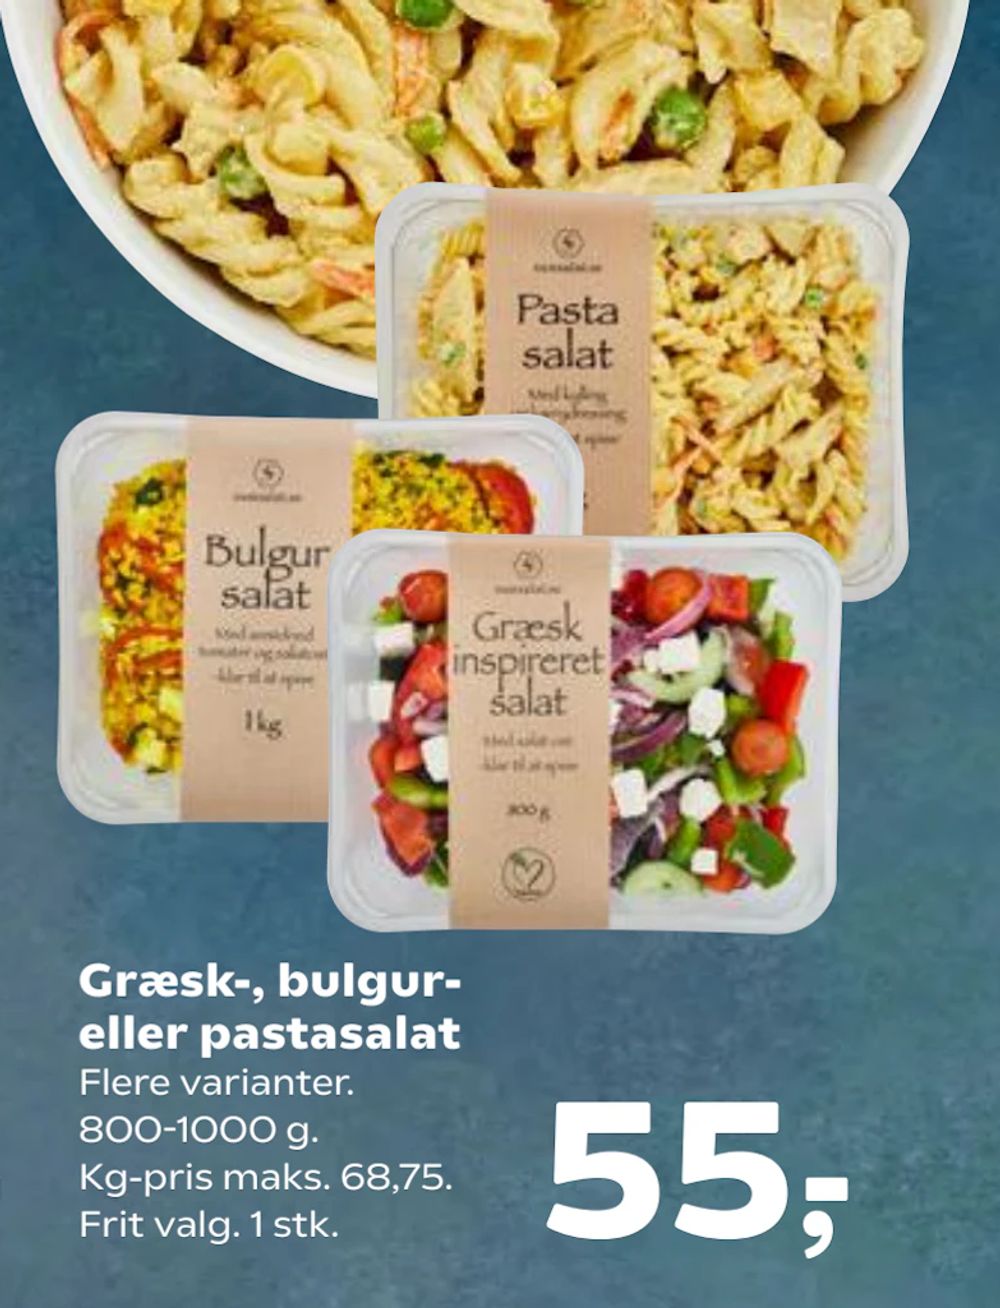 Tilbud på Græsk-, bulgur- eller pastasalat fra SuperBrugsen til 55 kr.